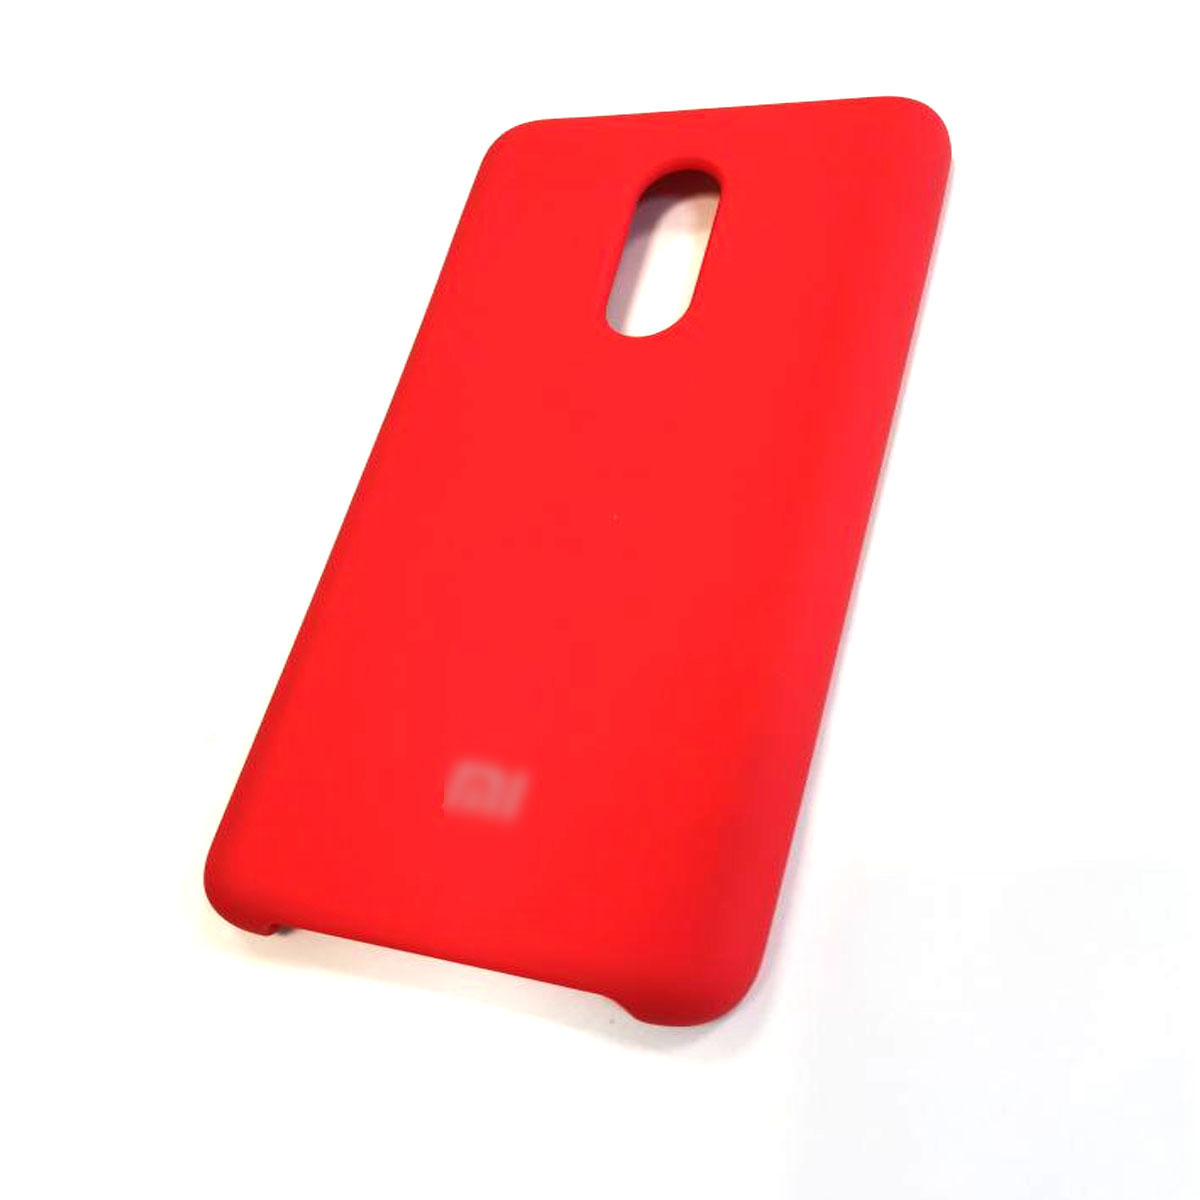 Чехол накладка для XIAOMI Redmi 5, силикон, цвет красный